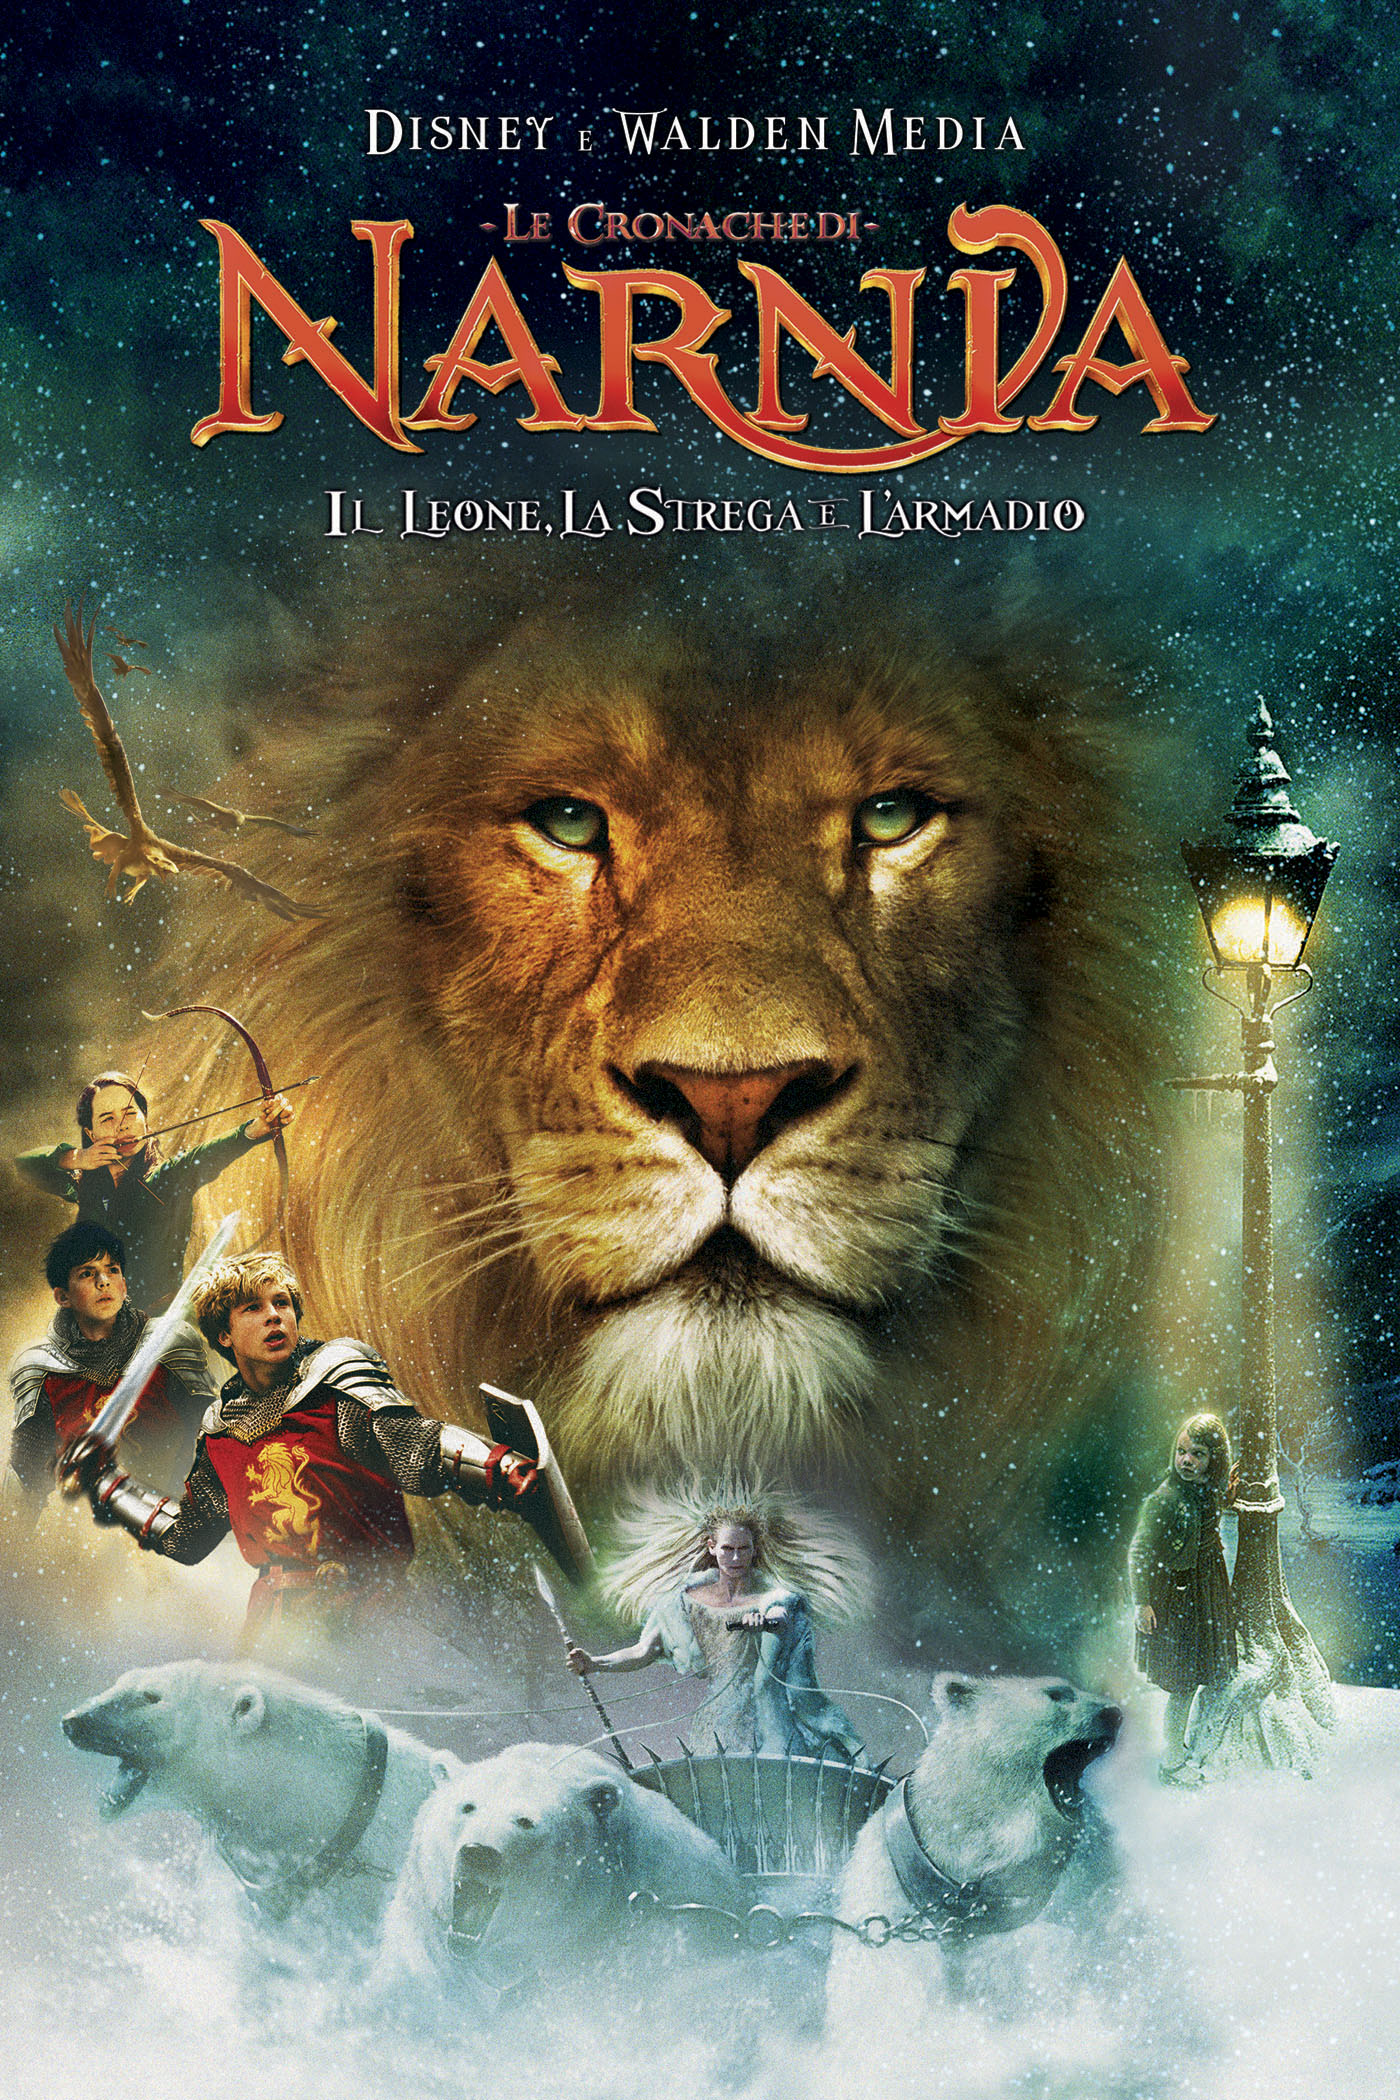 دانلود فیلم The Chronicles of Narnia The Lion the Witch and the Wardrobe 2005 با دوبله فارسی